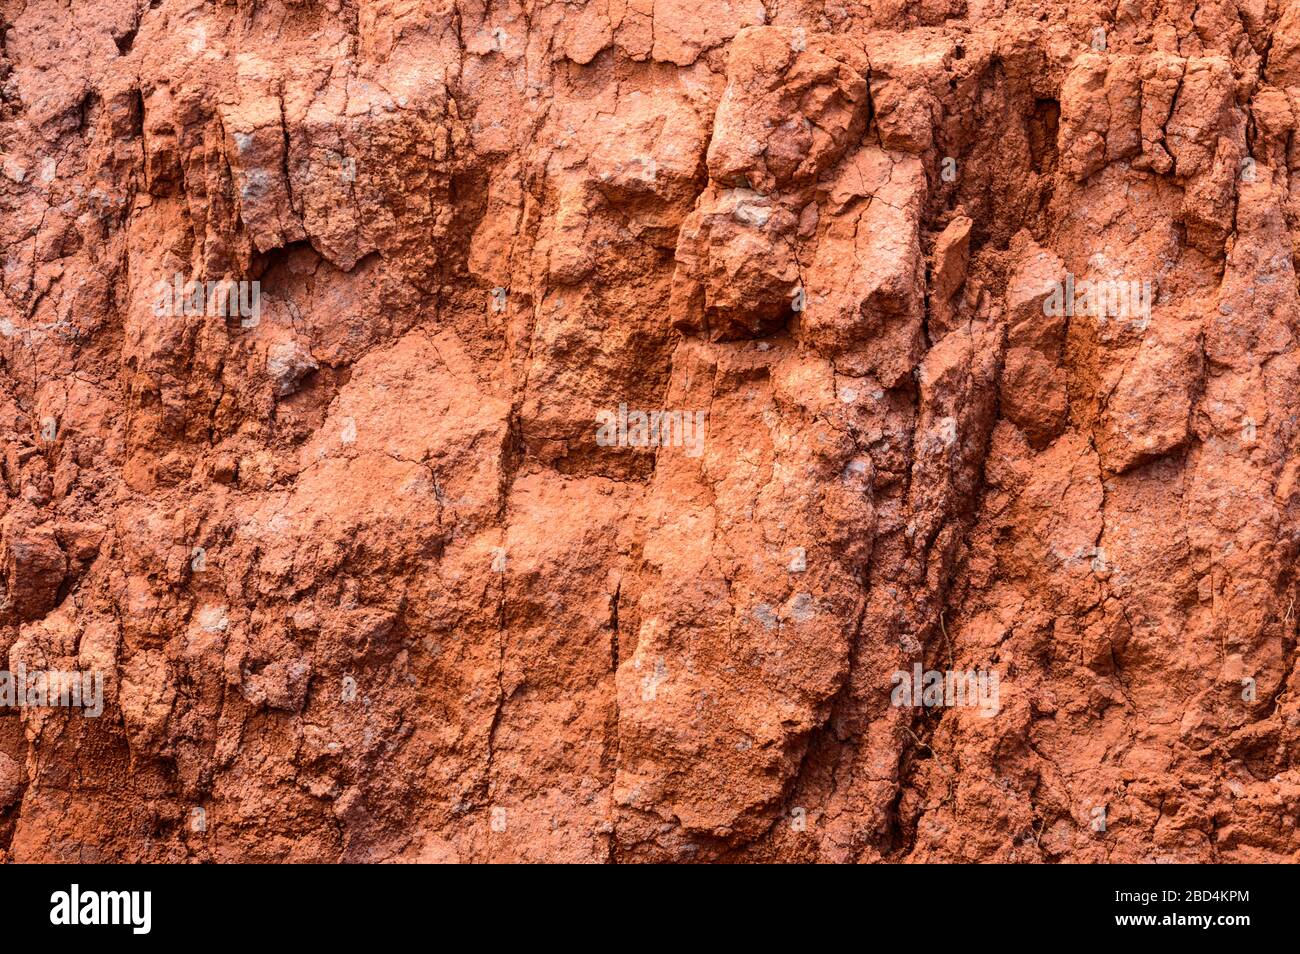 Sabbia rossa argillosa vulcanica ideale per Screensaver e Wallpaper sull'isola di la Gomera. Aprile 15, 2019. La Gomera, Santa Cruz de Tenerife SPAI Foto Stock